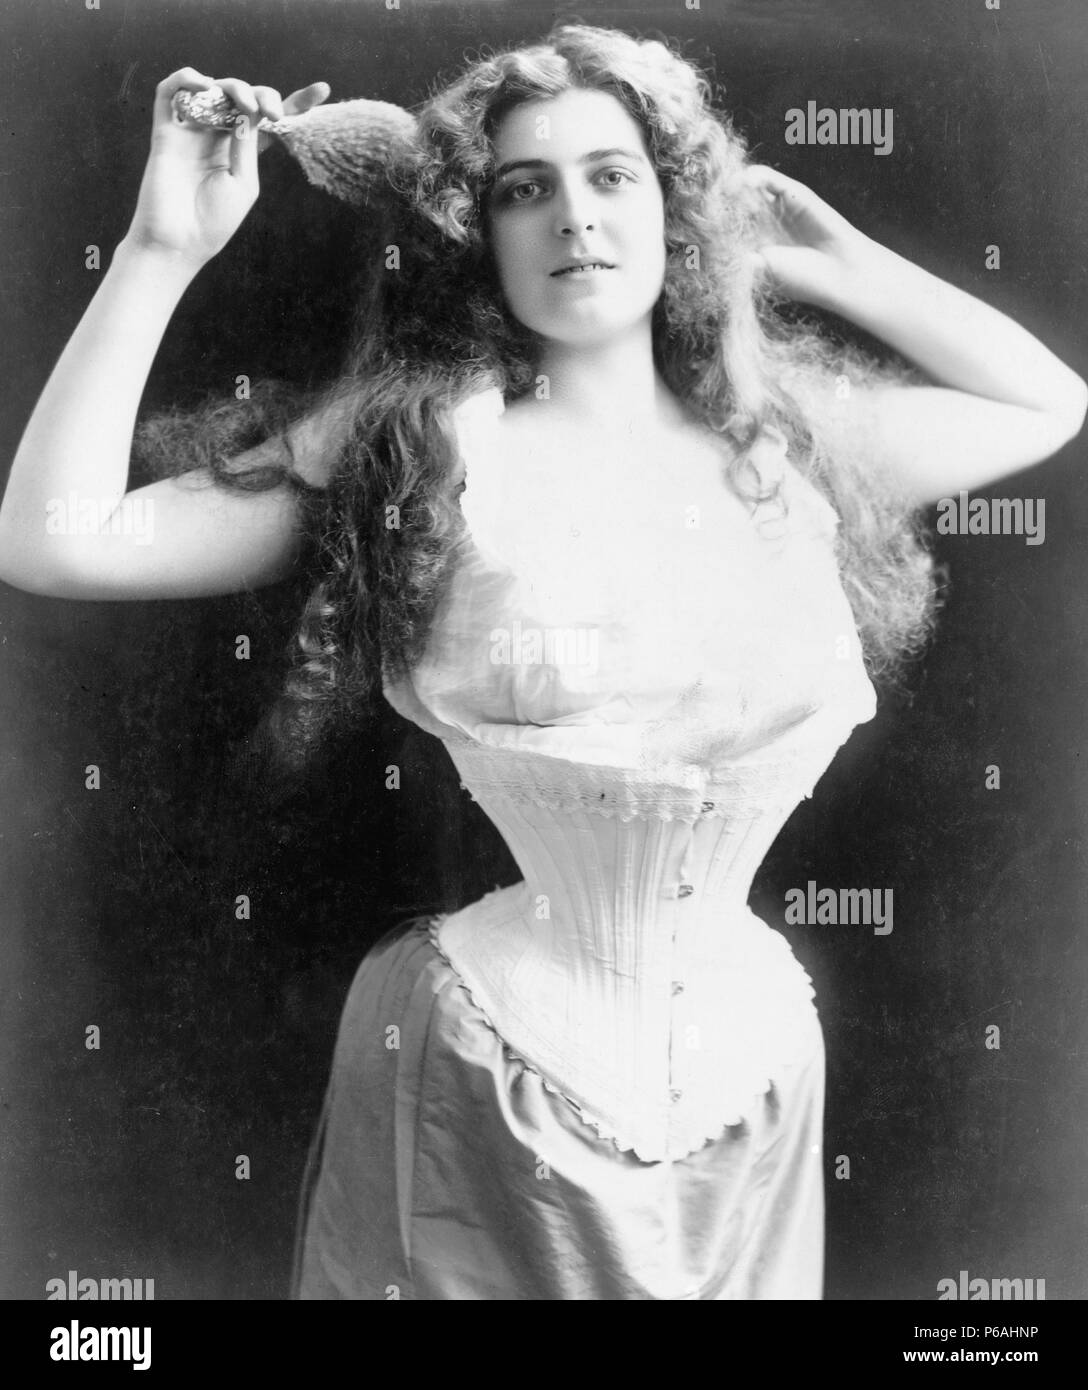 corset 1900